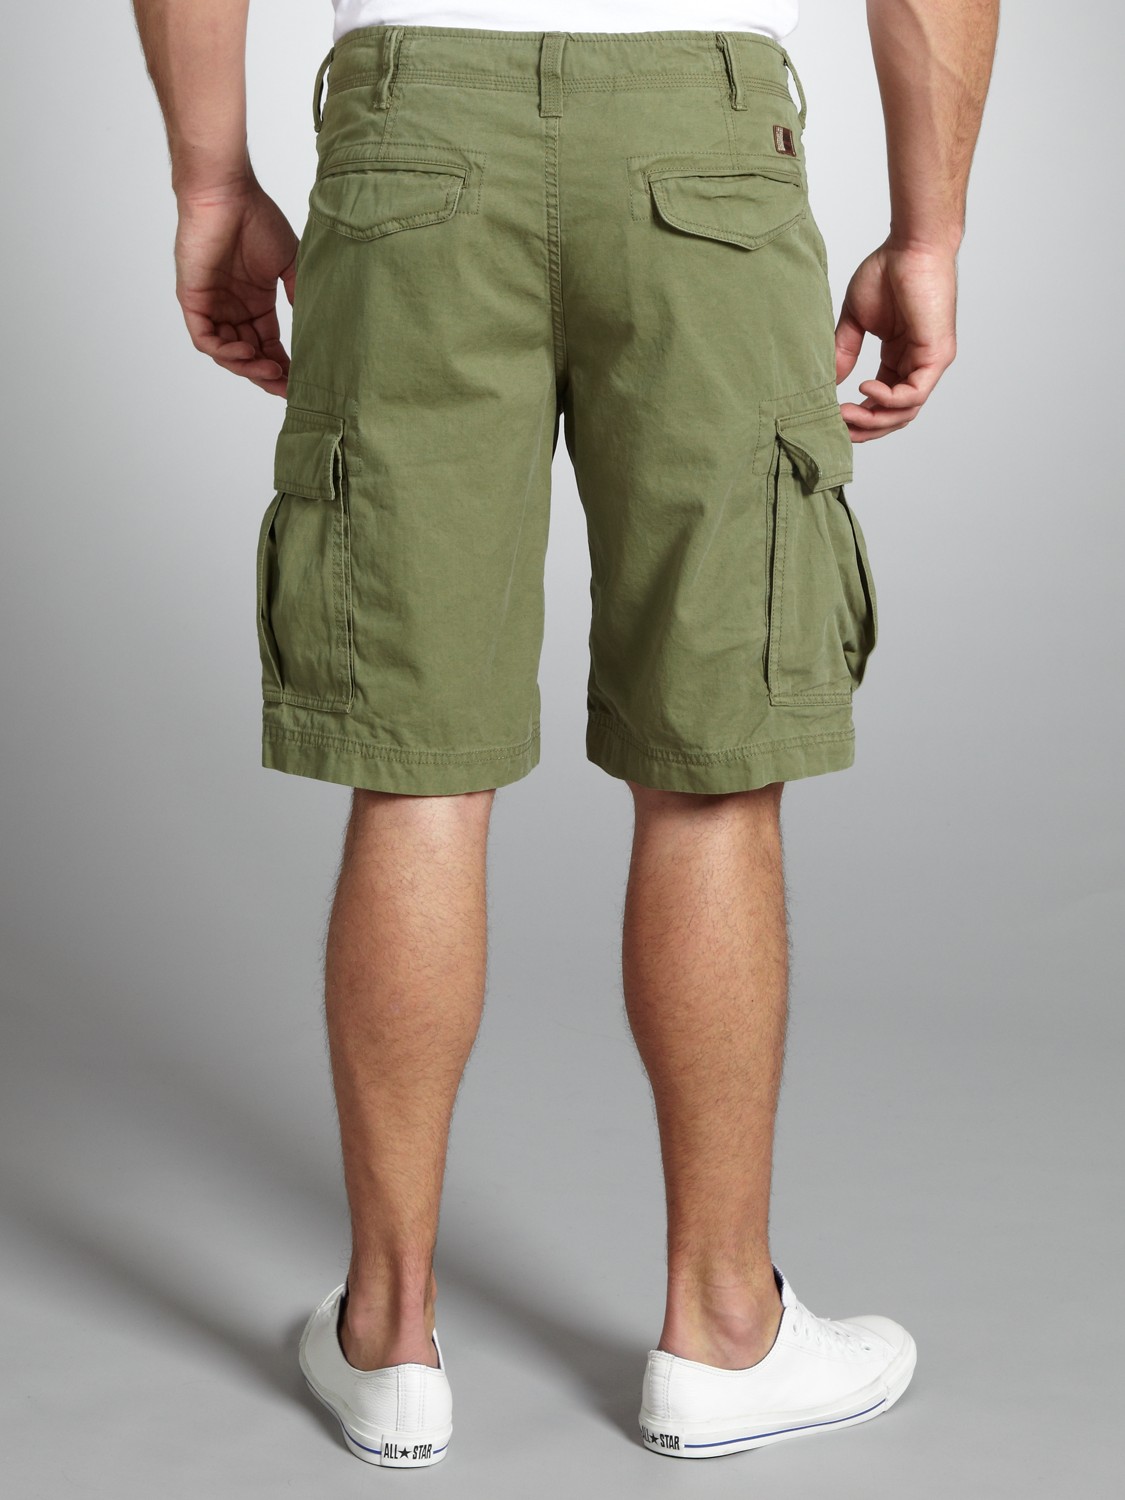 timberland shorts mens